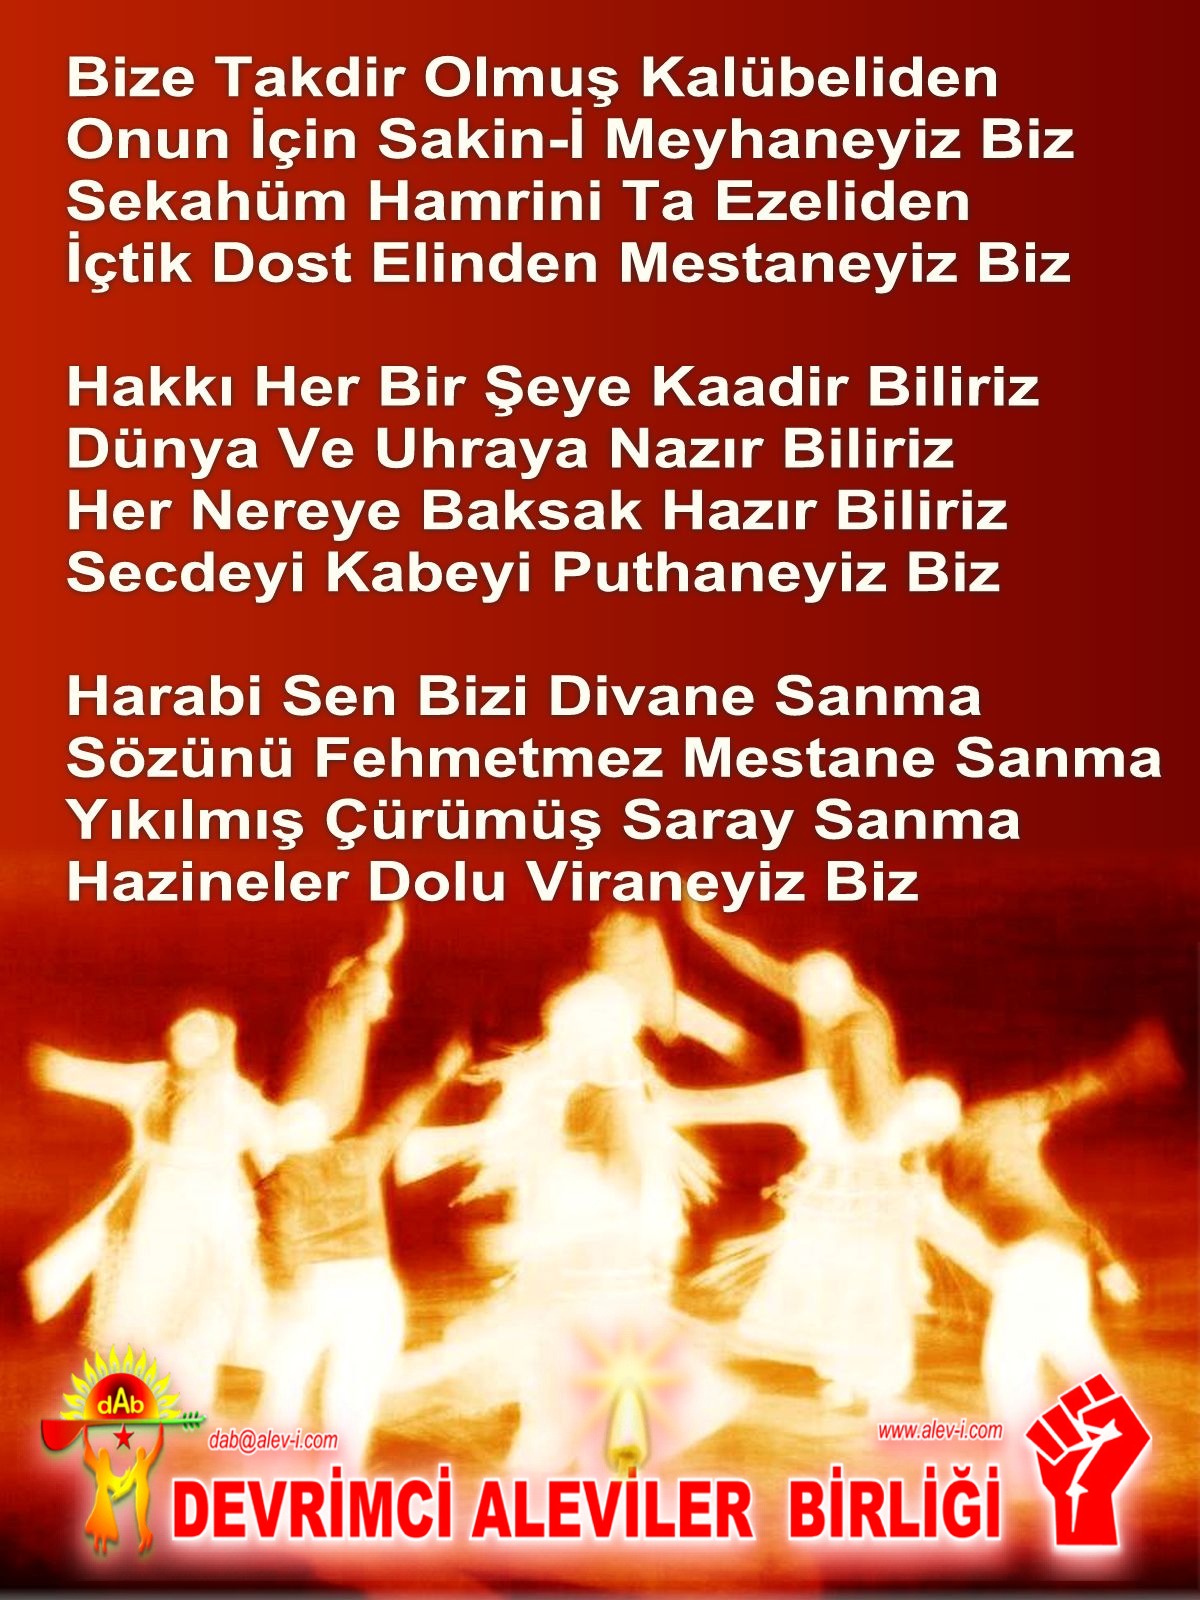 Alevi Bektaşi Kızılbaş Pir Sultan Devrimci Aleviler Birliği DAB Harabi